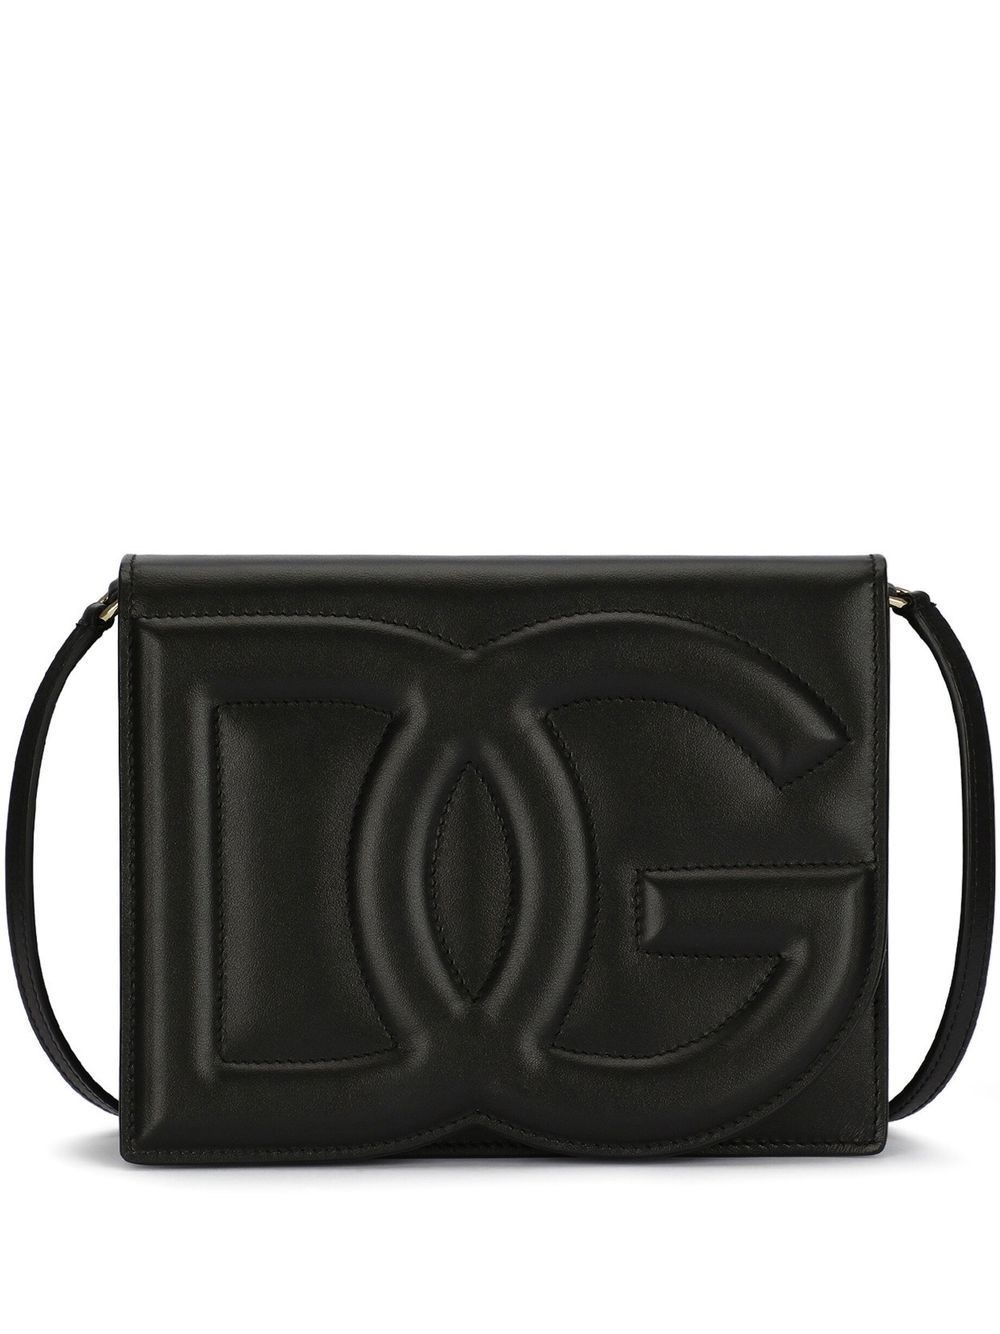 Dolce & Gabbana Logo Shoulder Bag In Black  